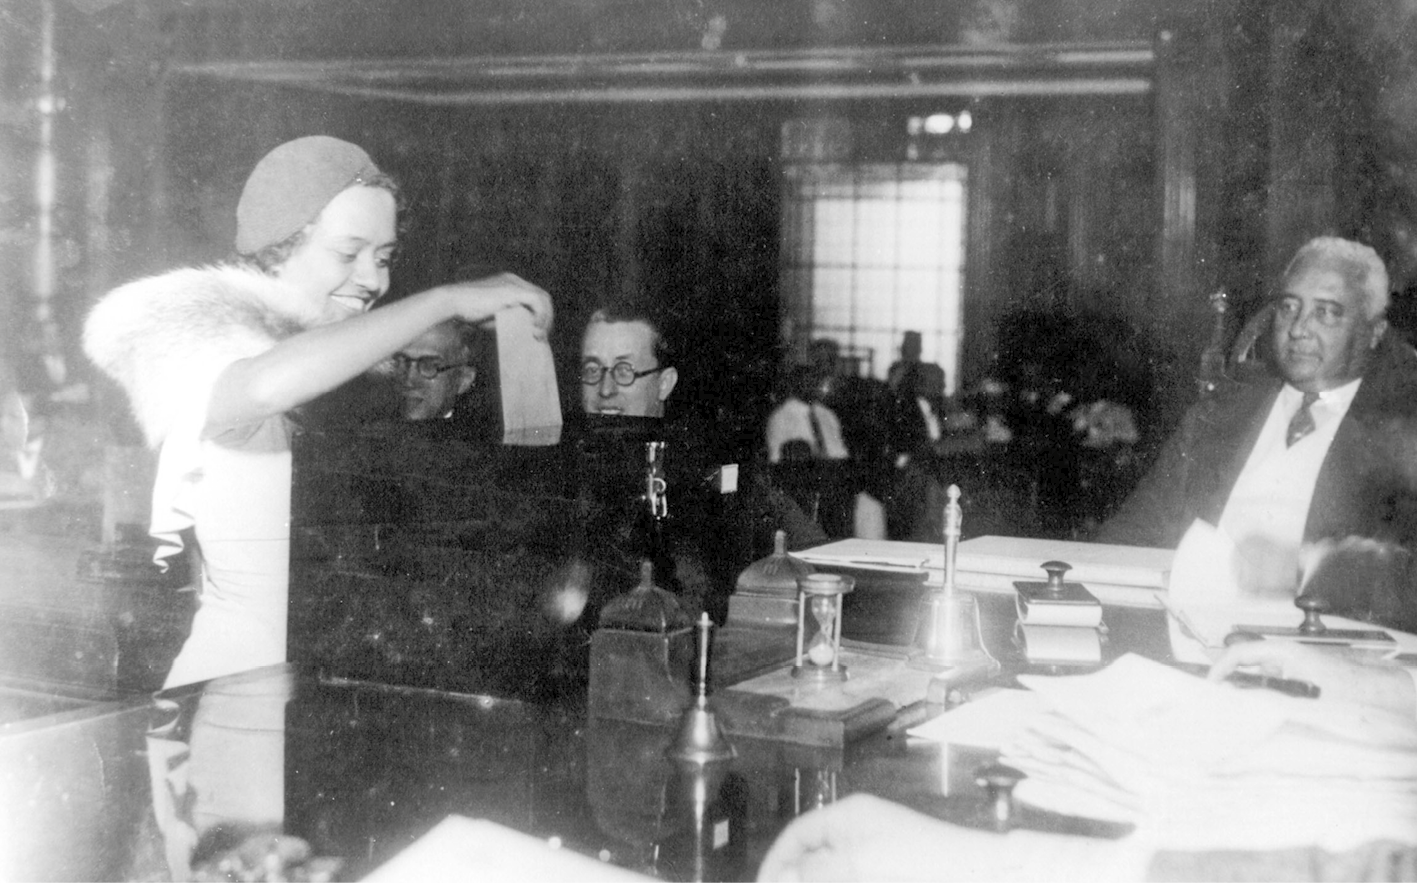 Fotografia em preto e branco. Mulher sorridente, de vestido claro e chapéu, coloca um pedaço de papel dentro de uma urna. Homens sentados observam a cena.